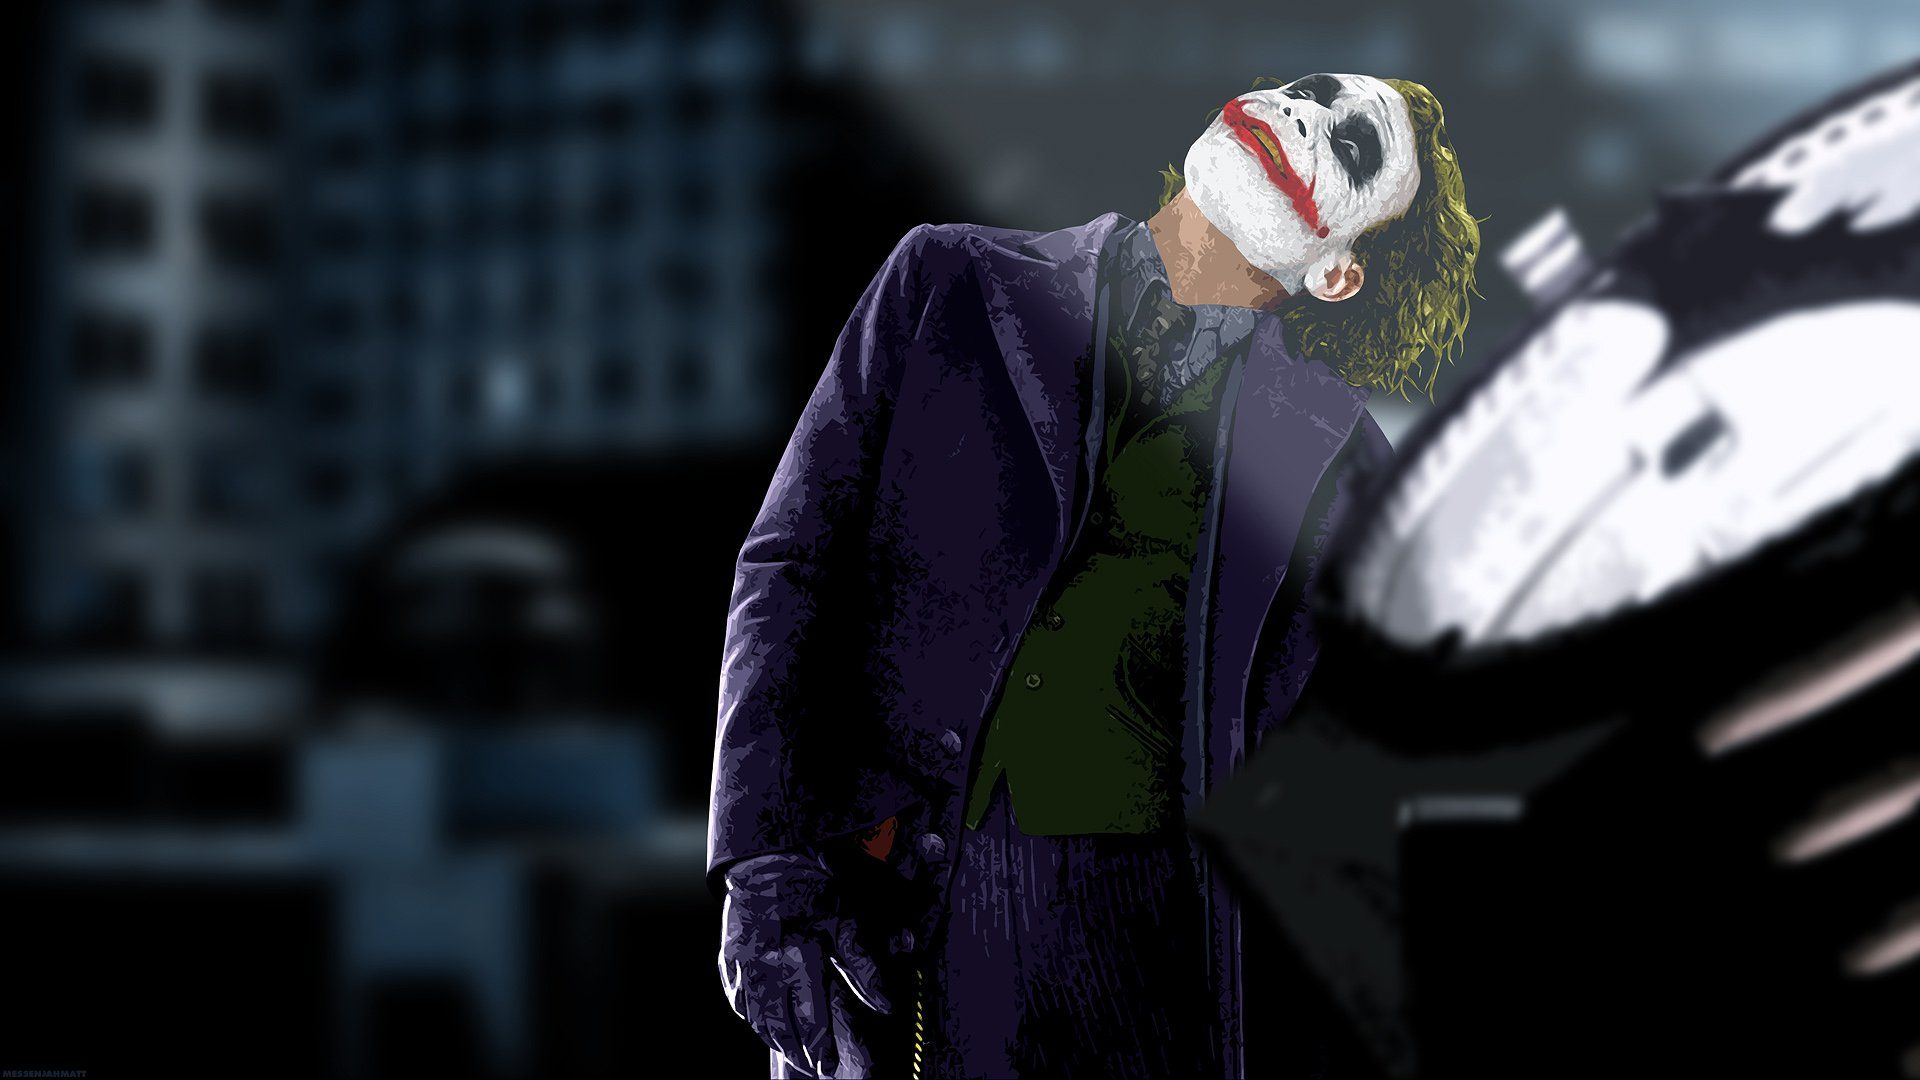 The Joker The Dark Knight wallpaper | 1920x1080 | 274922 | WallpaperUP